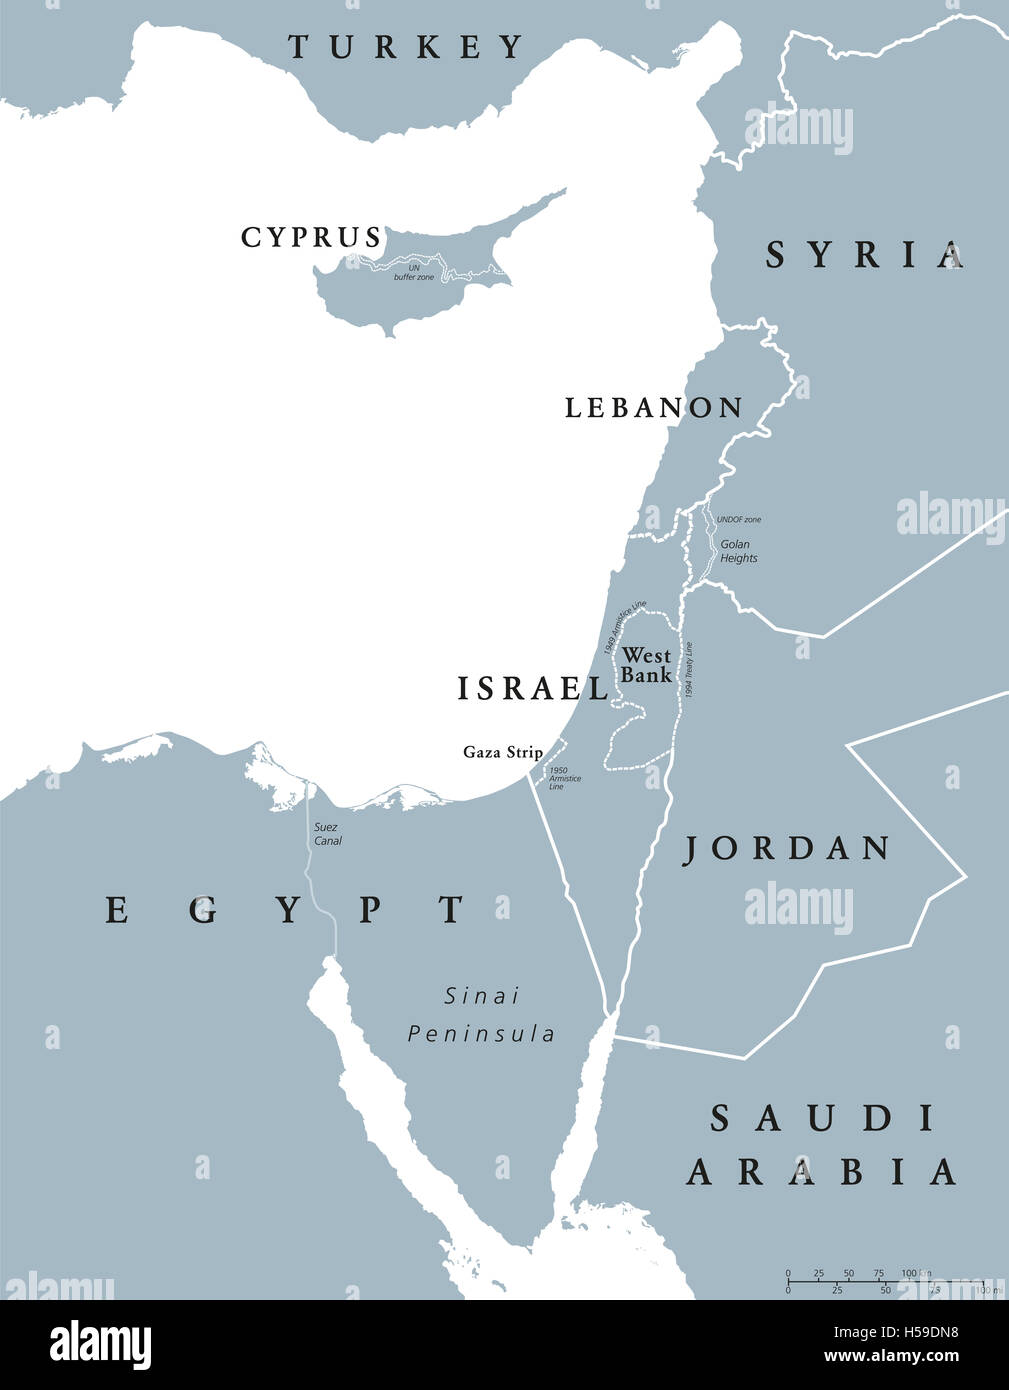 Los países del Mediterráneo oriental mapa político con fronteras nacionales. Unidas al este del Mar Mediterráneo, también Levant. Foto de stock